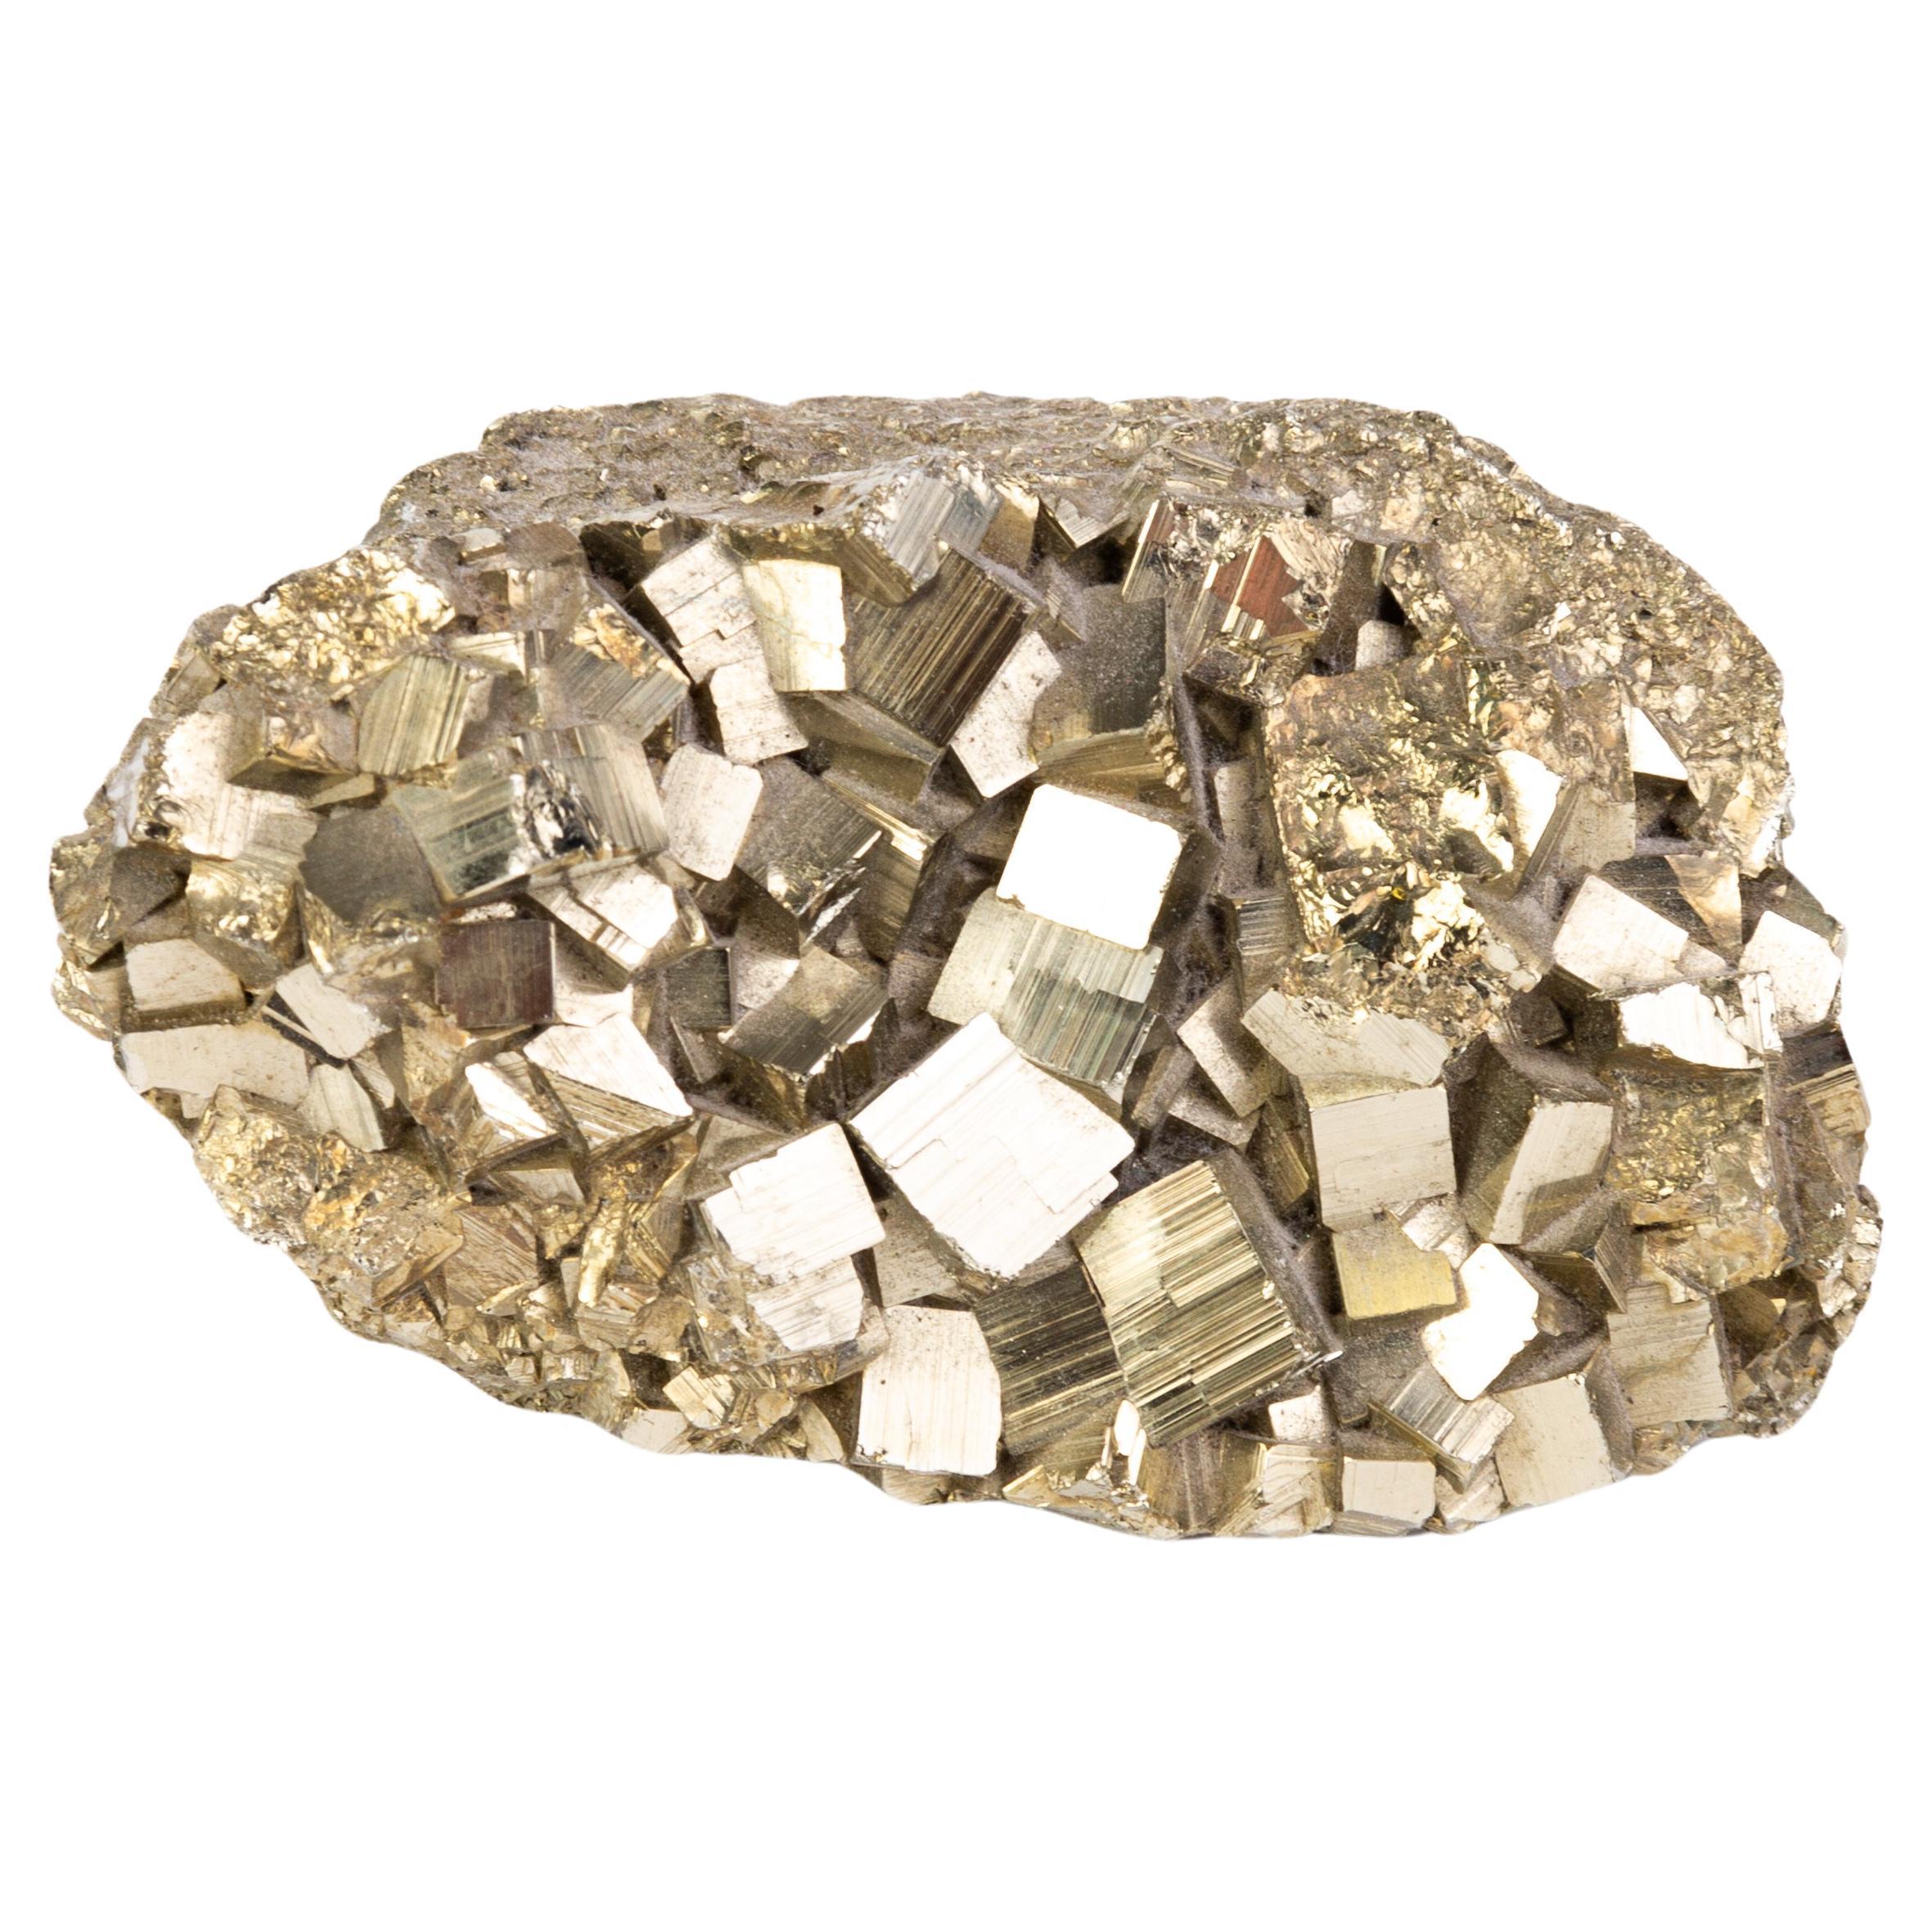 Pyrrhotite Stone Mineral Specimen 